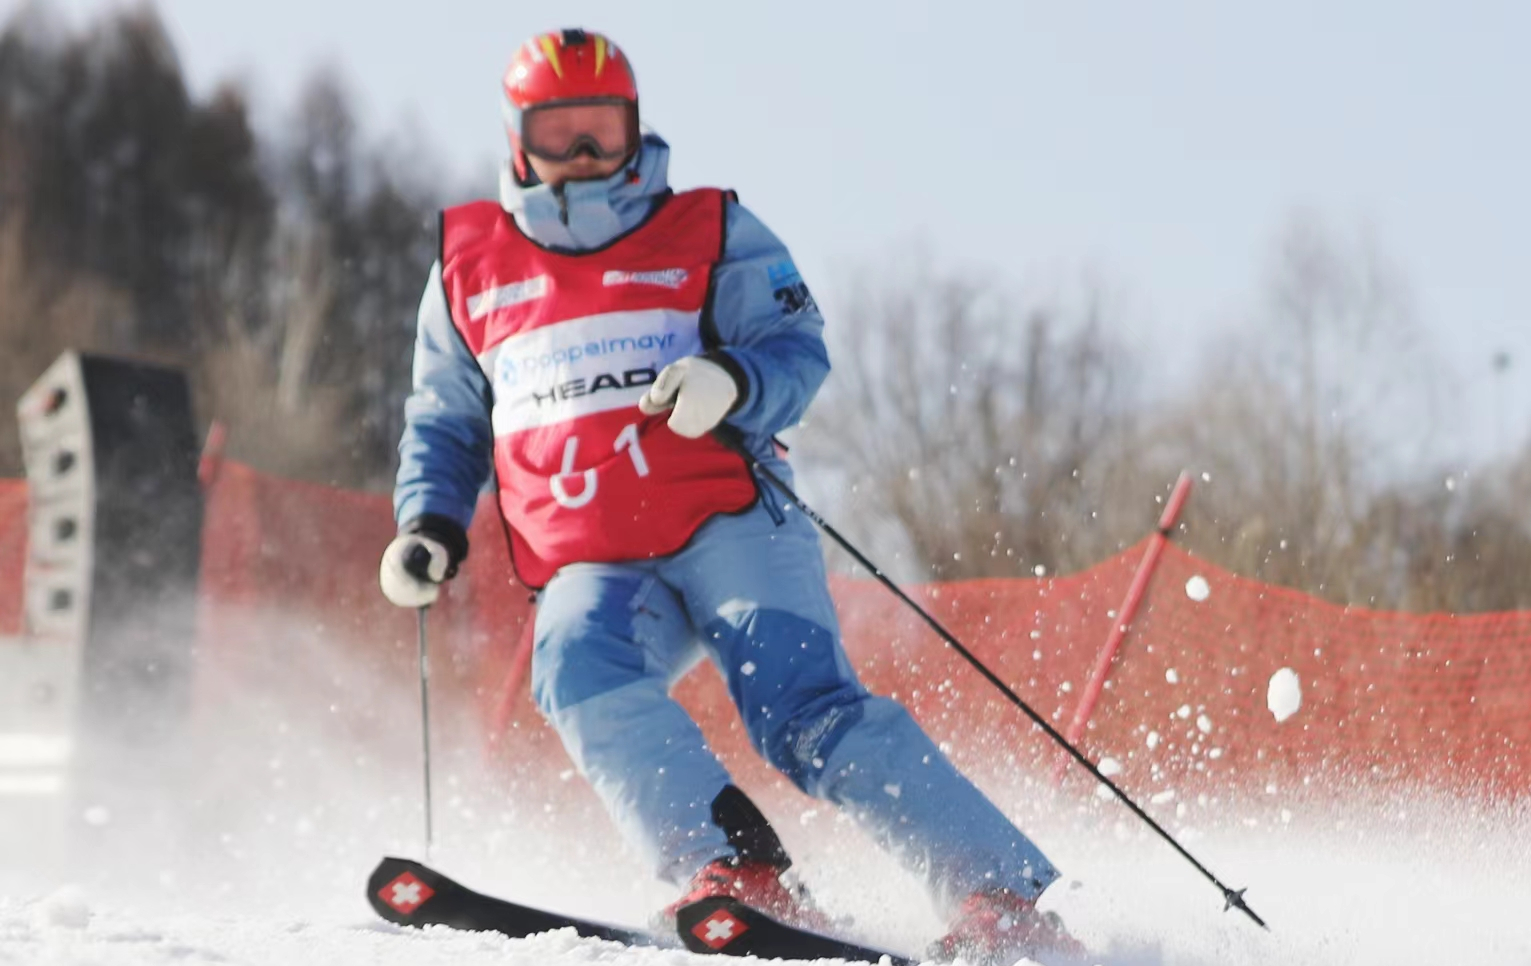 後奧運吉林國際滑雪賽事大幕拉開 80名選手通化萬峰雪場體驗速度與激情